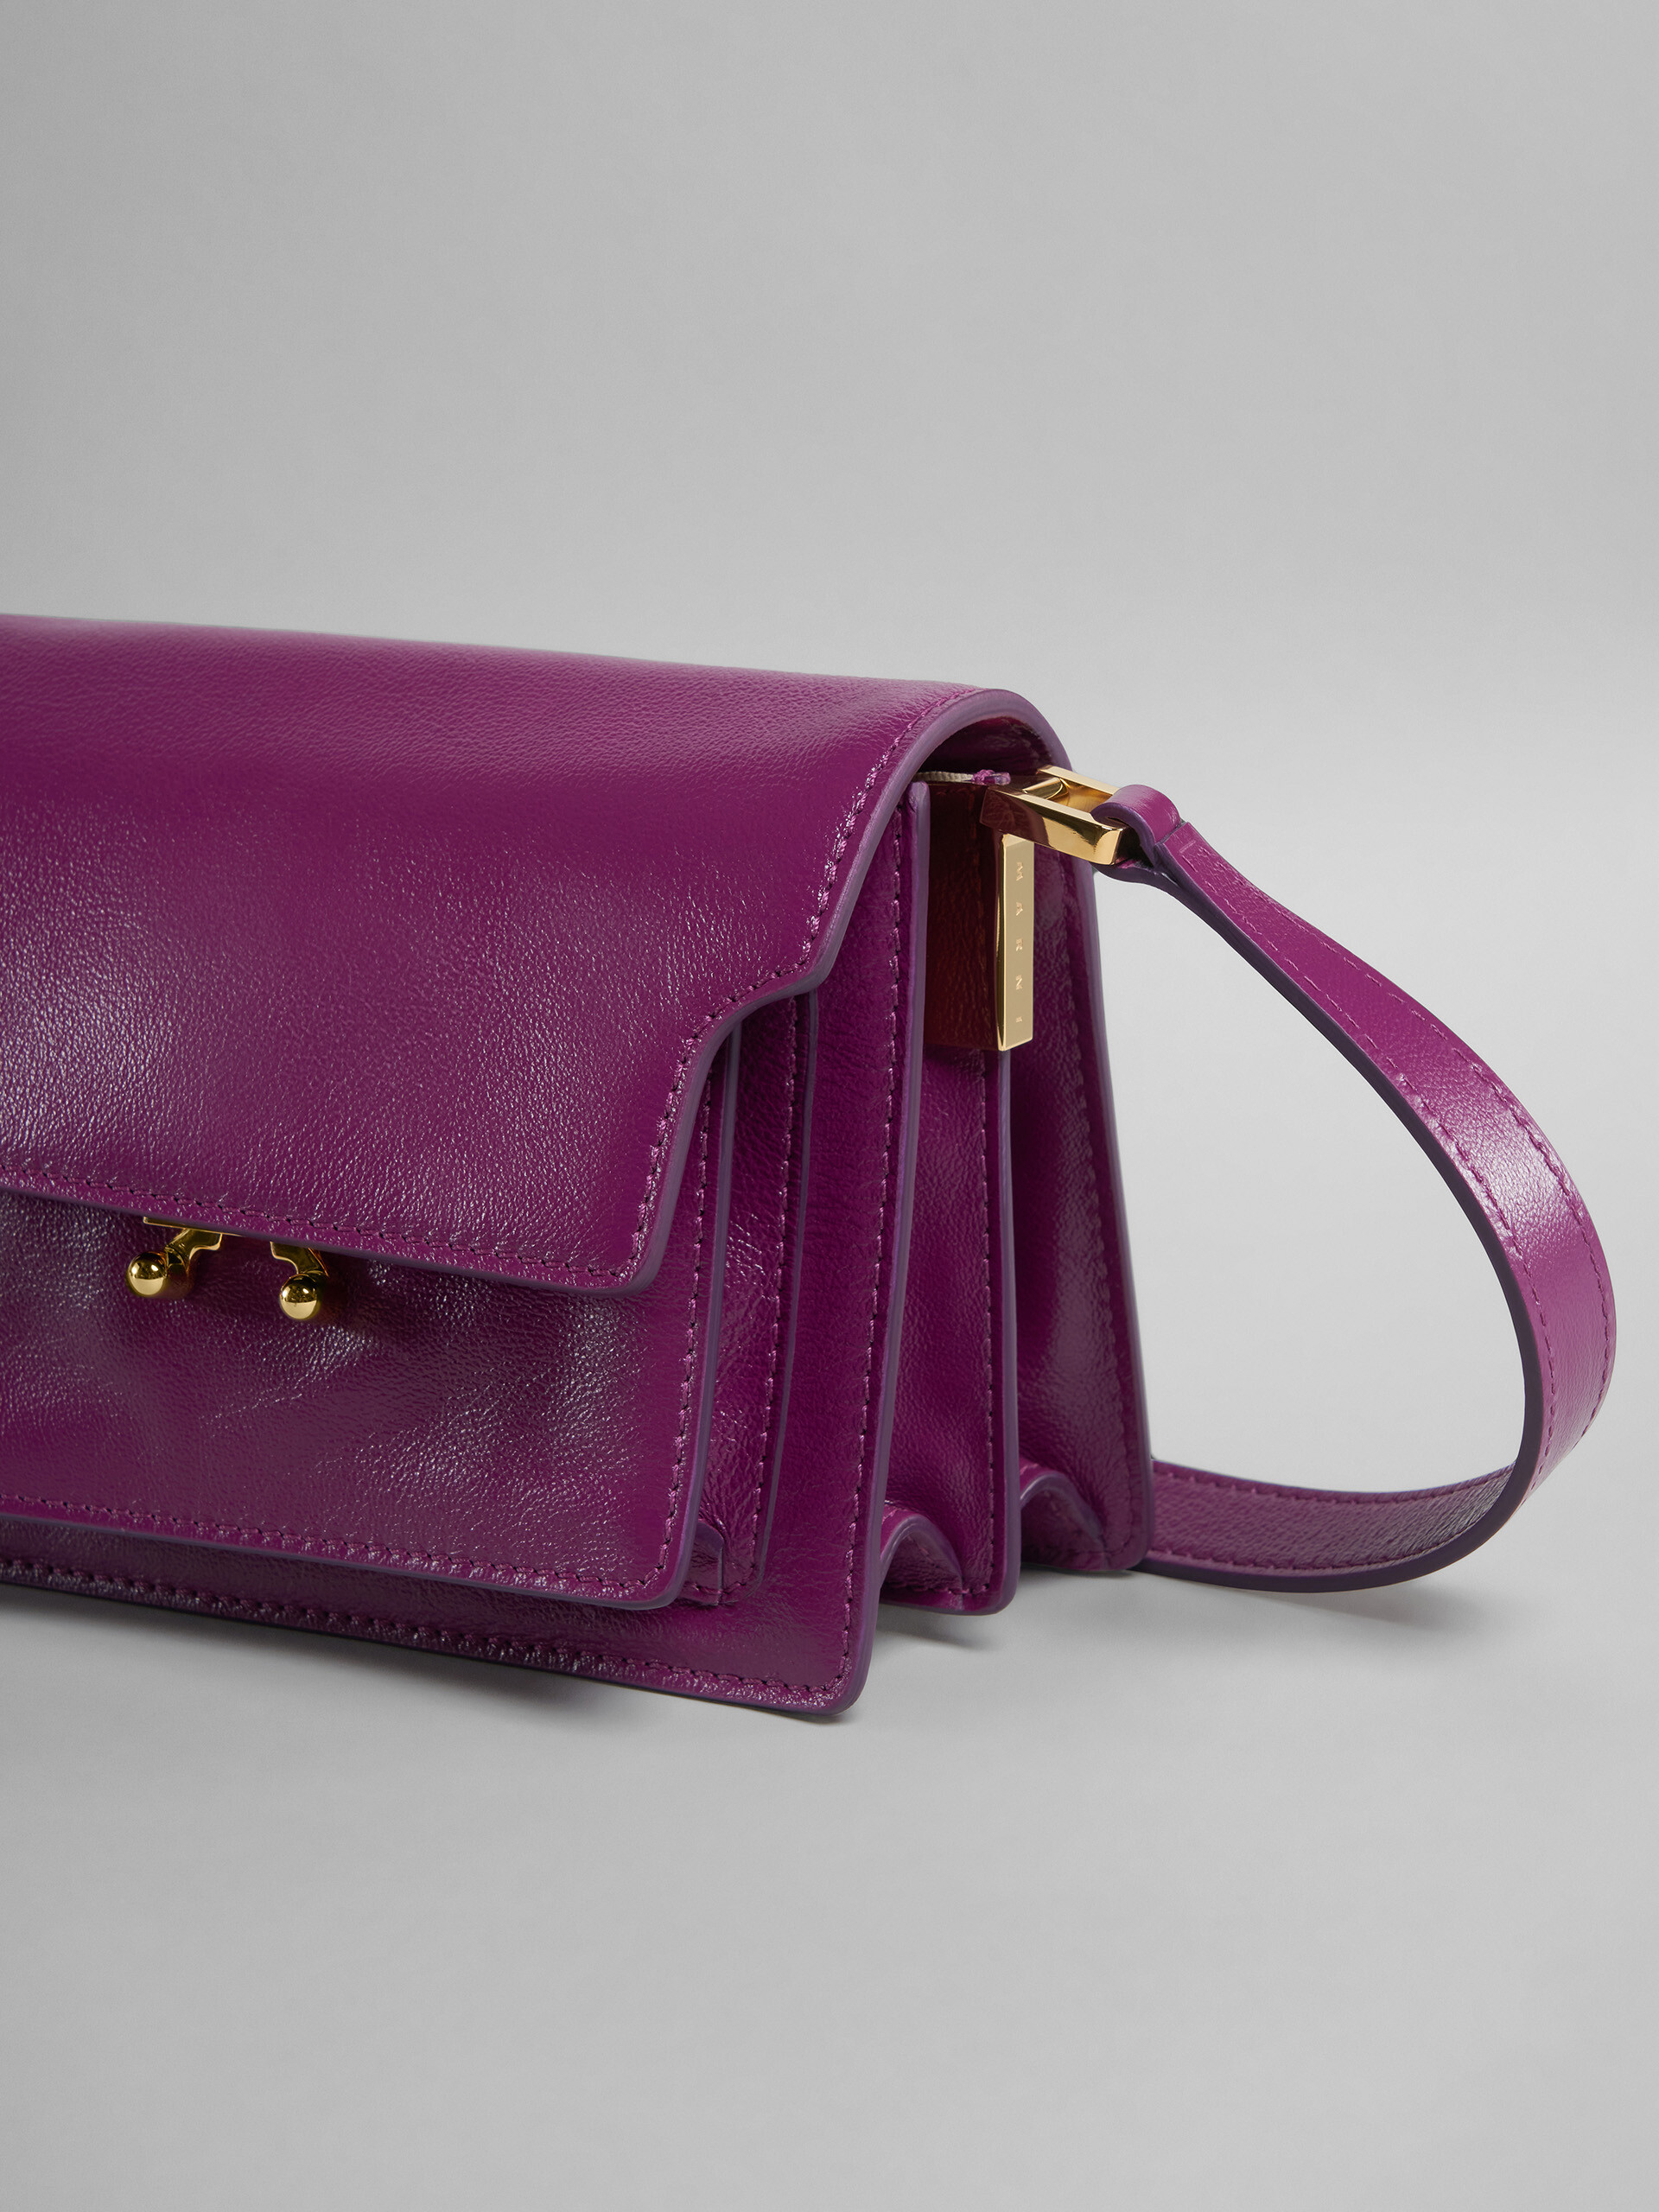 TRUNK SOFT mini bag in purple leather - Shoulder Bag - Image 5